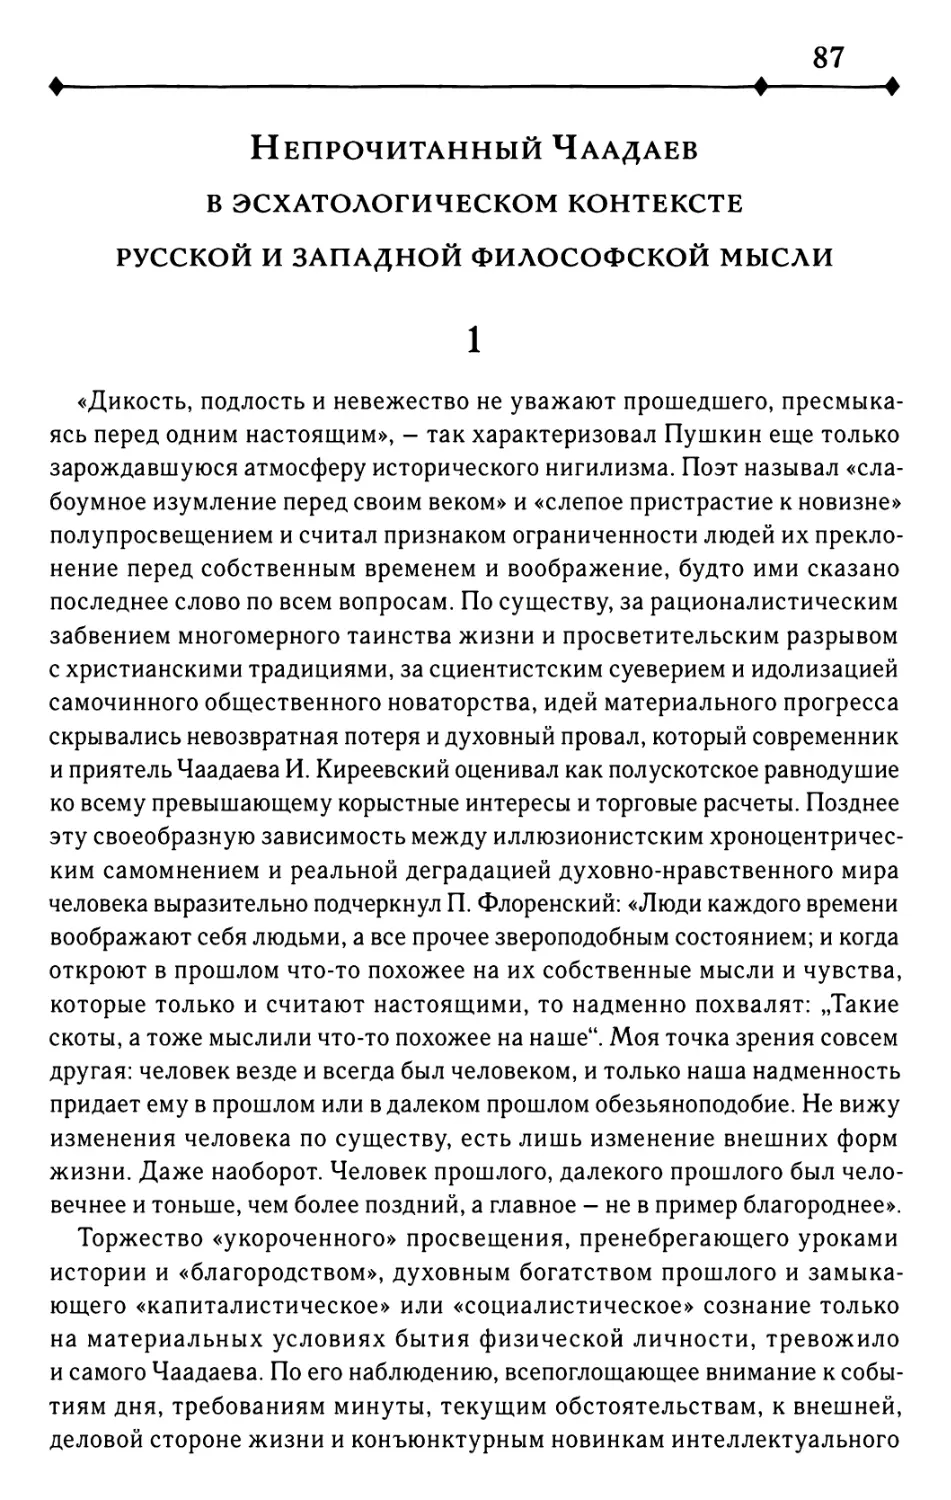 Непрочитанный Чаадаев в эсхатологическом контексте русской и западной философской мысли